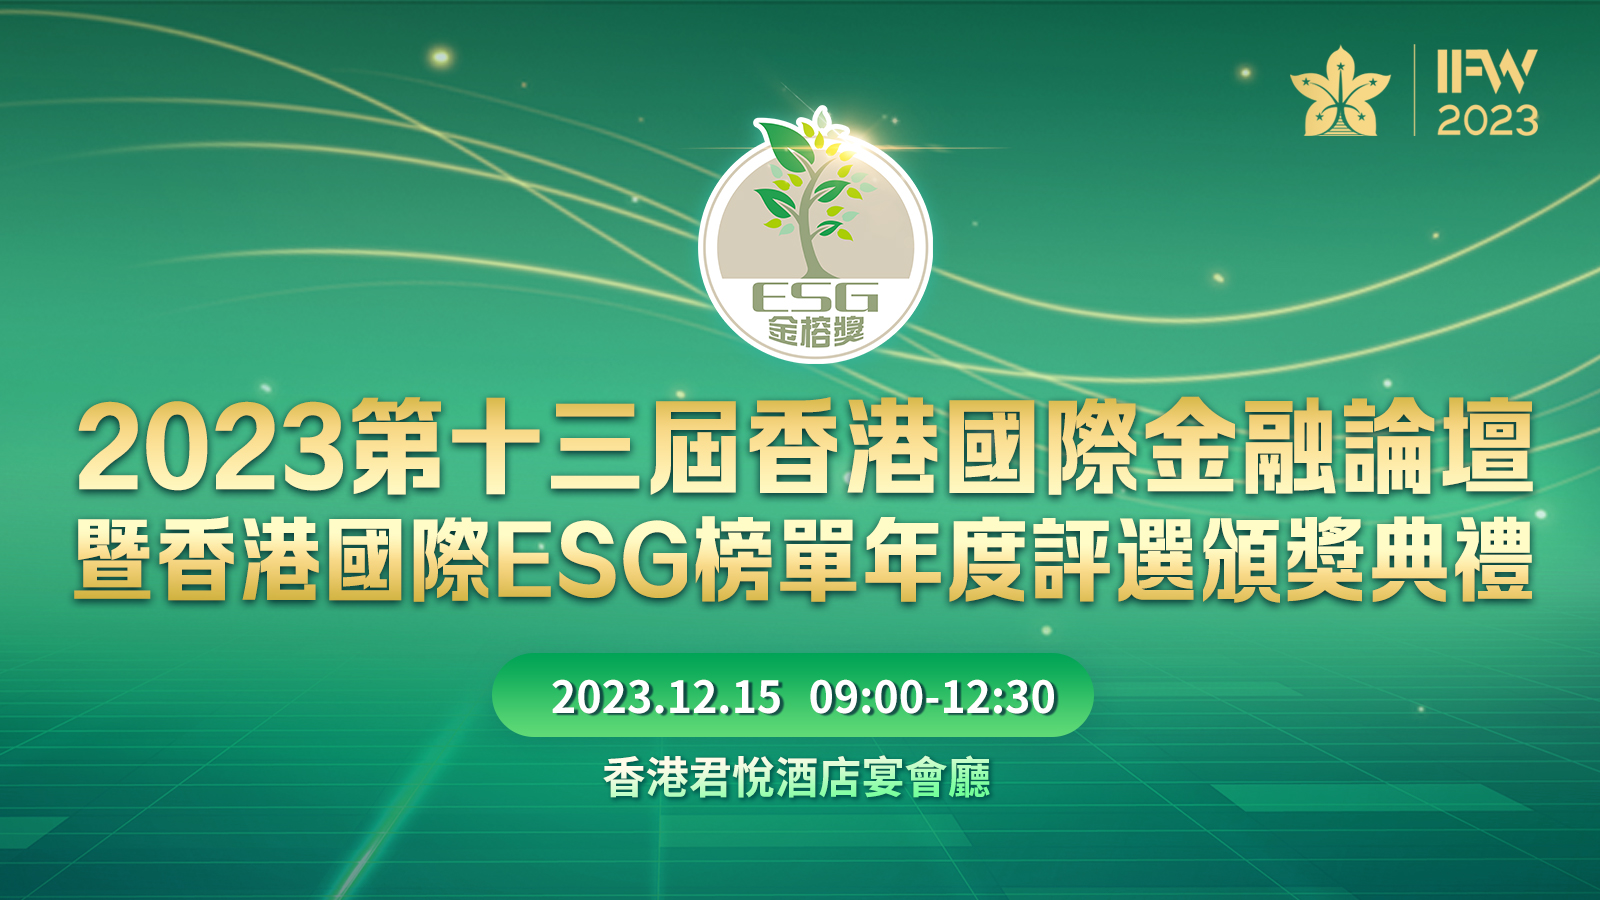 第十三屆香港國際金融論壇暨ESG榜單年度評選頒獎禮